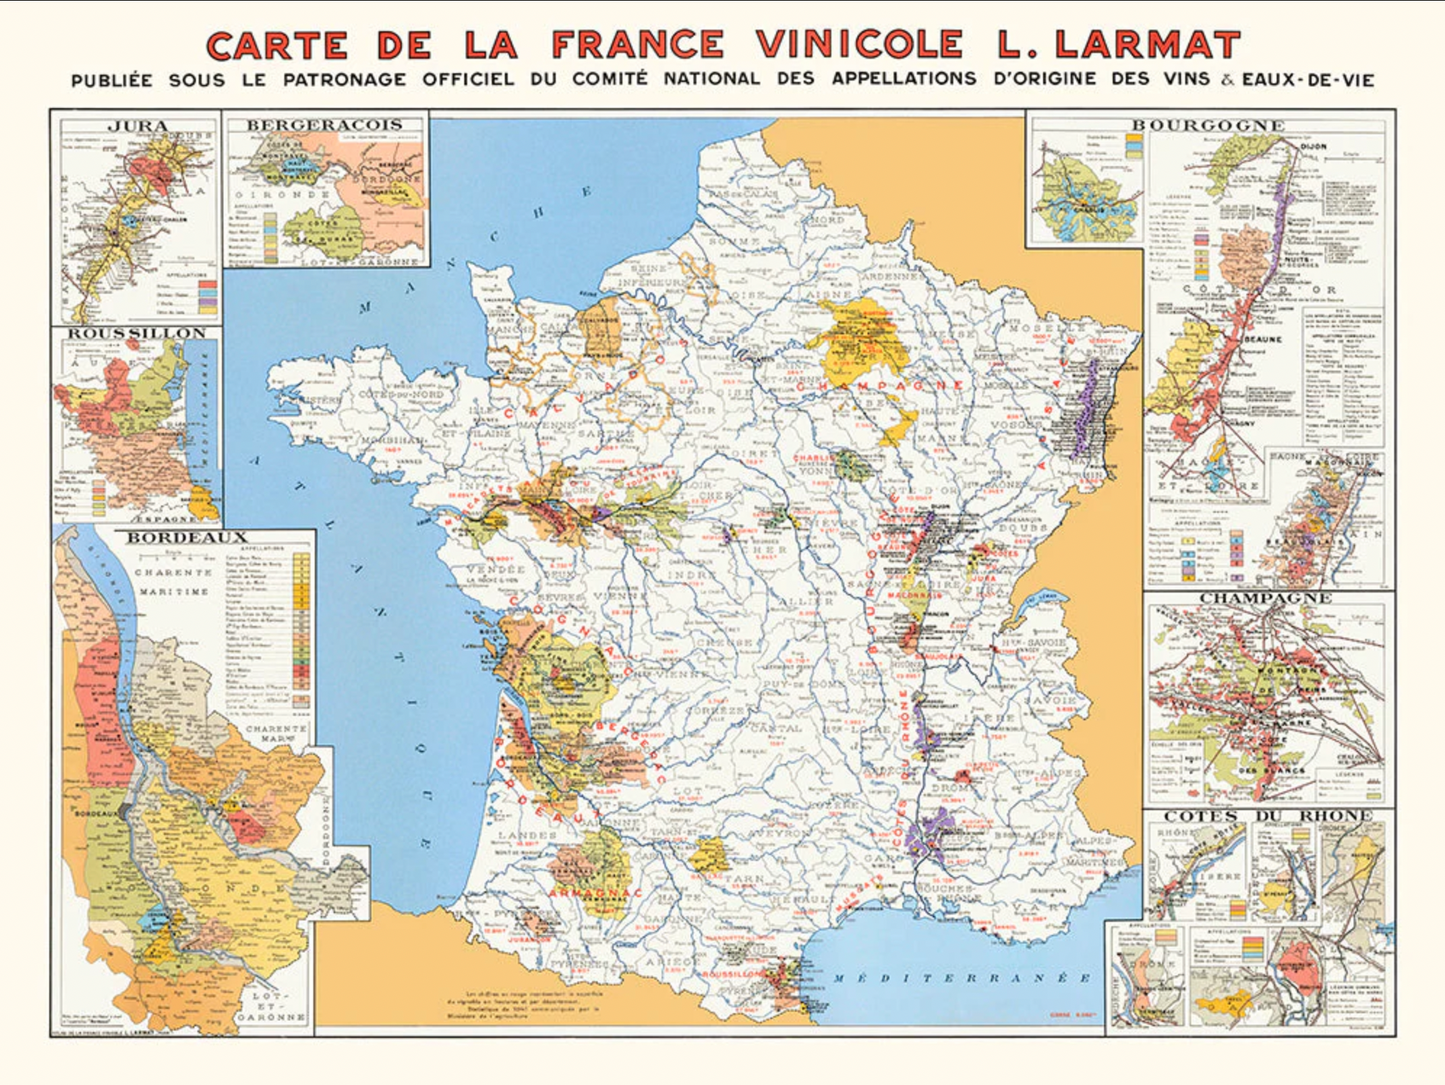 Carte de France vinicole de 1945